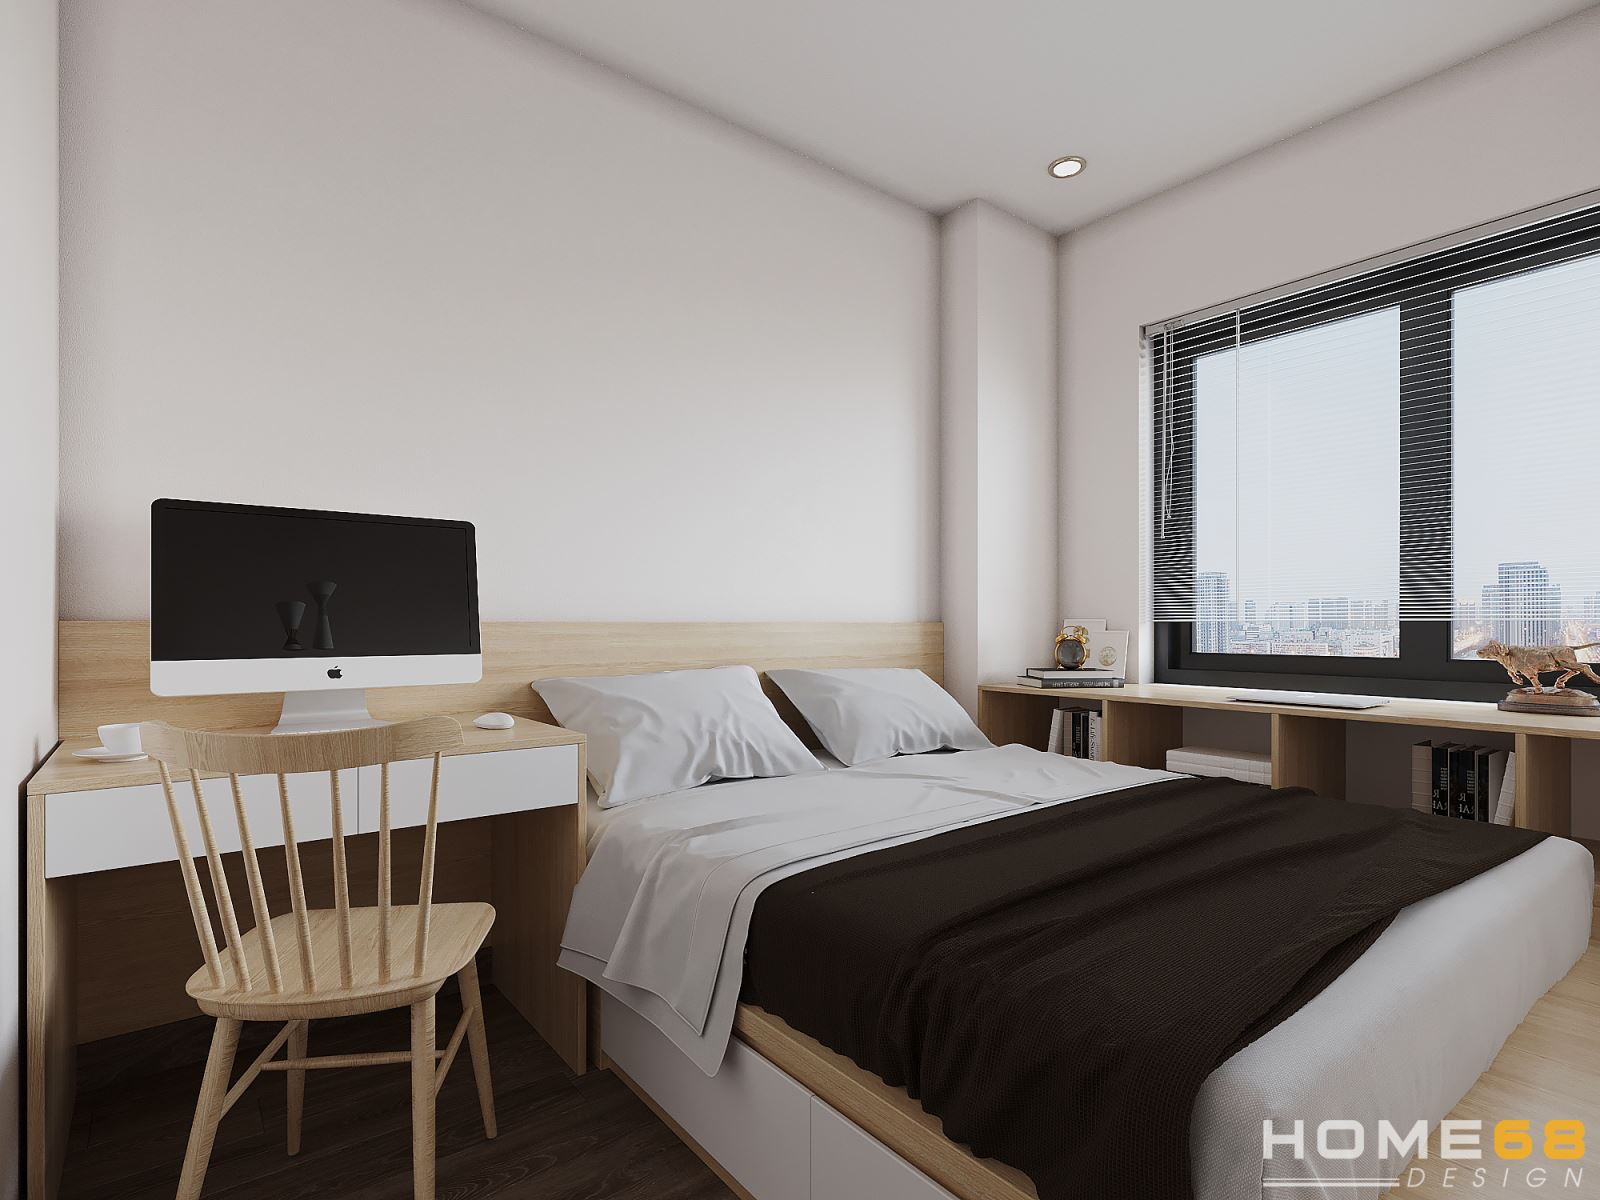 HOME68 thiết kế nội thất phòng ngủ hiện đại, ấn tượng tại Hải Phòng